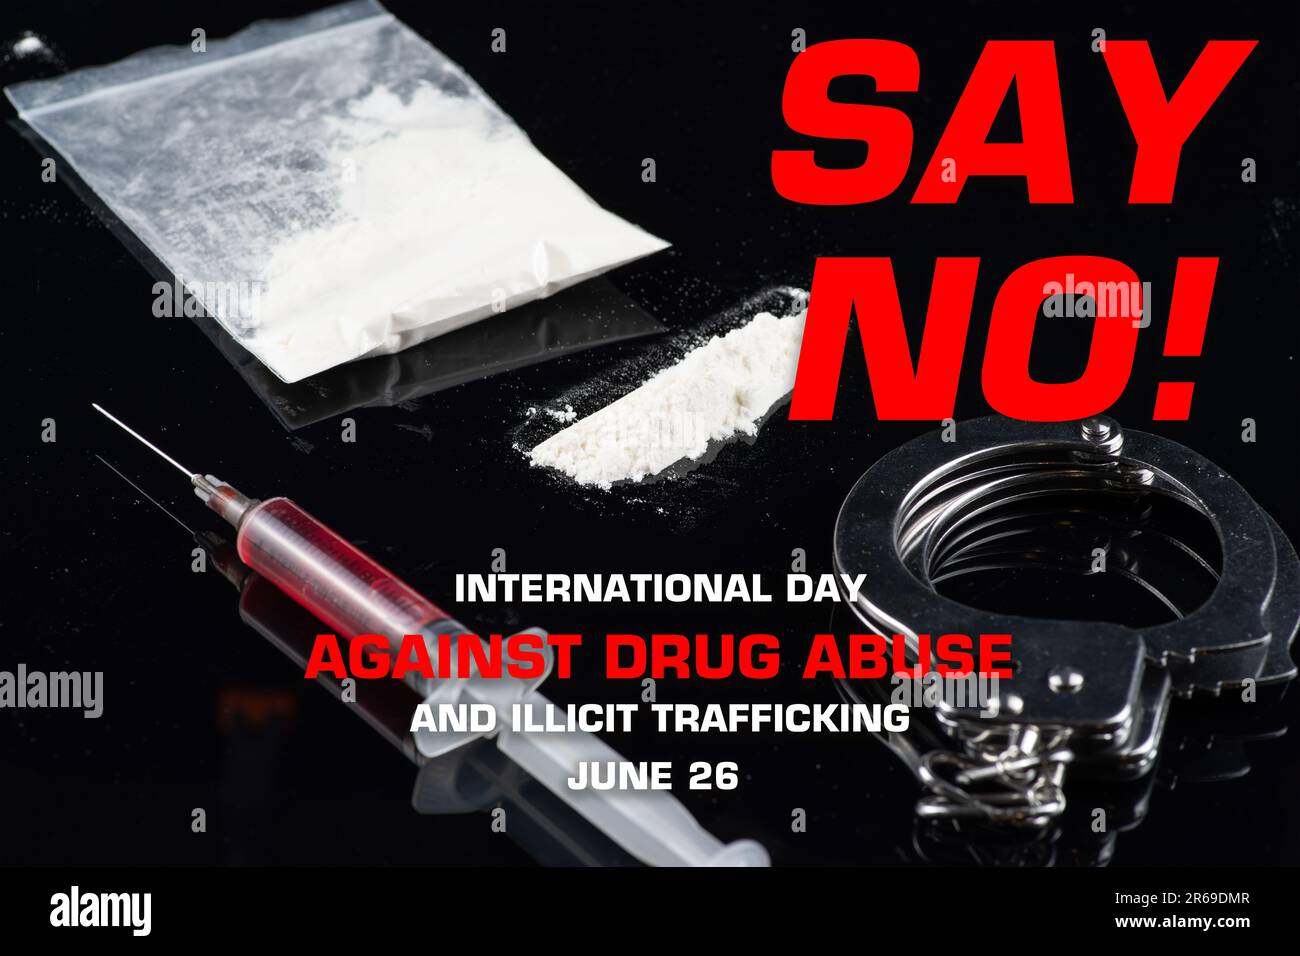 Journée internationale contre l'abus des drogues et le trafic illicite, concept juridique Banque D'Images